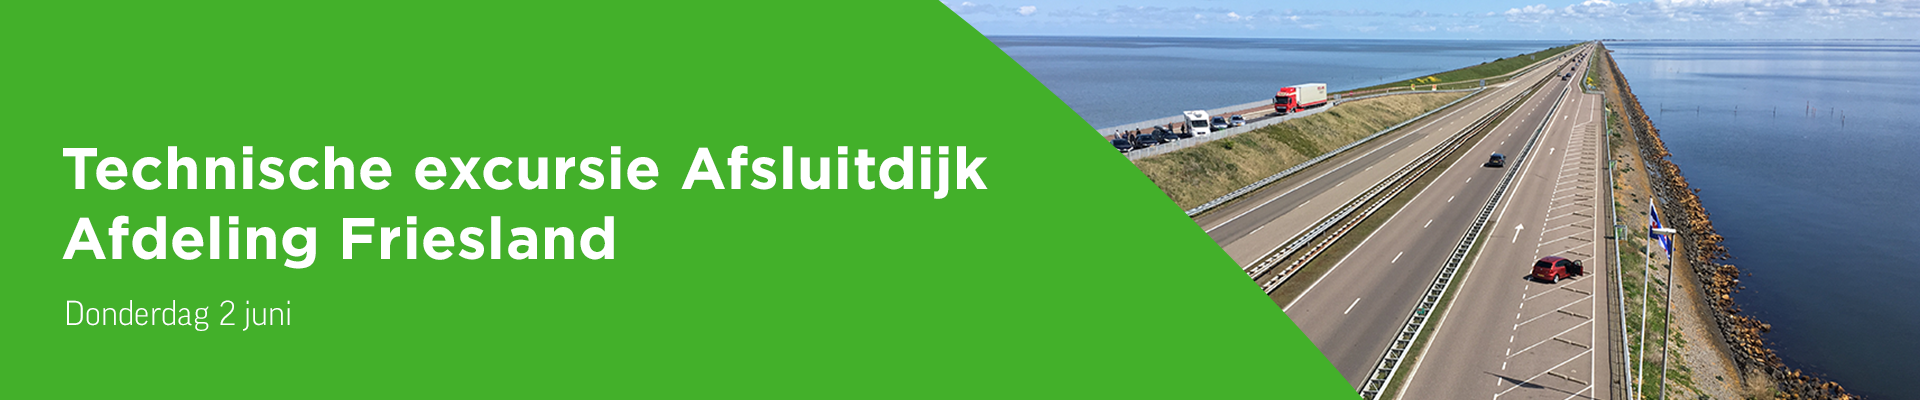 Technische excursie Afsluitdijk Afdeling Friesland (Kopie)